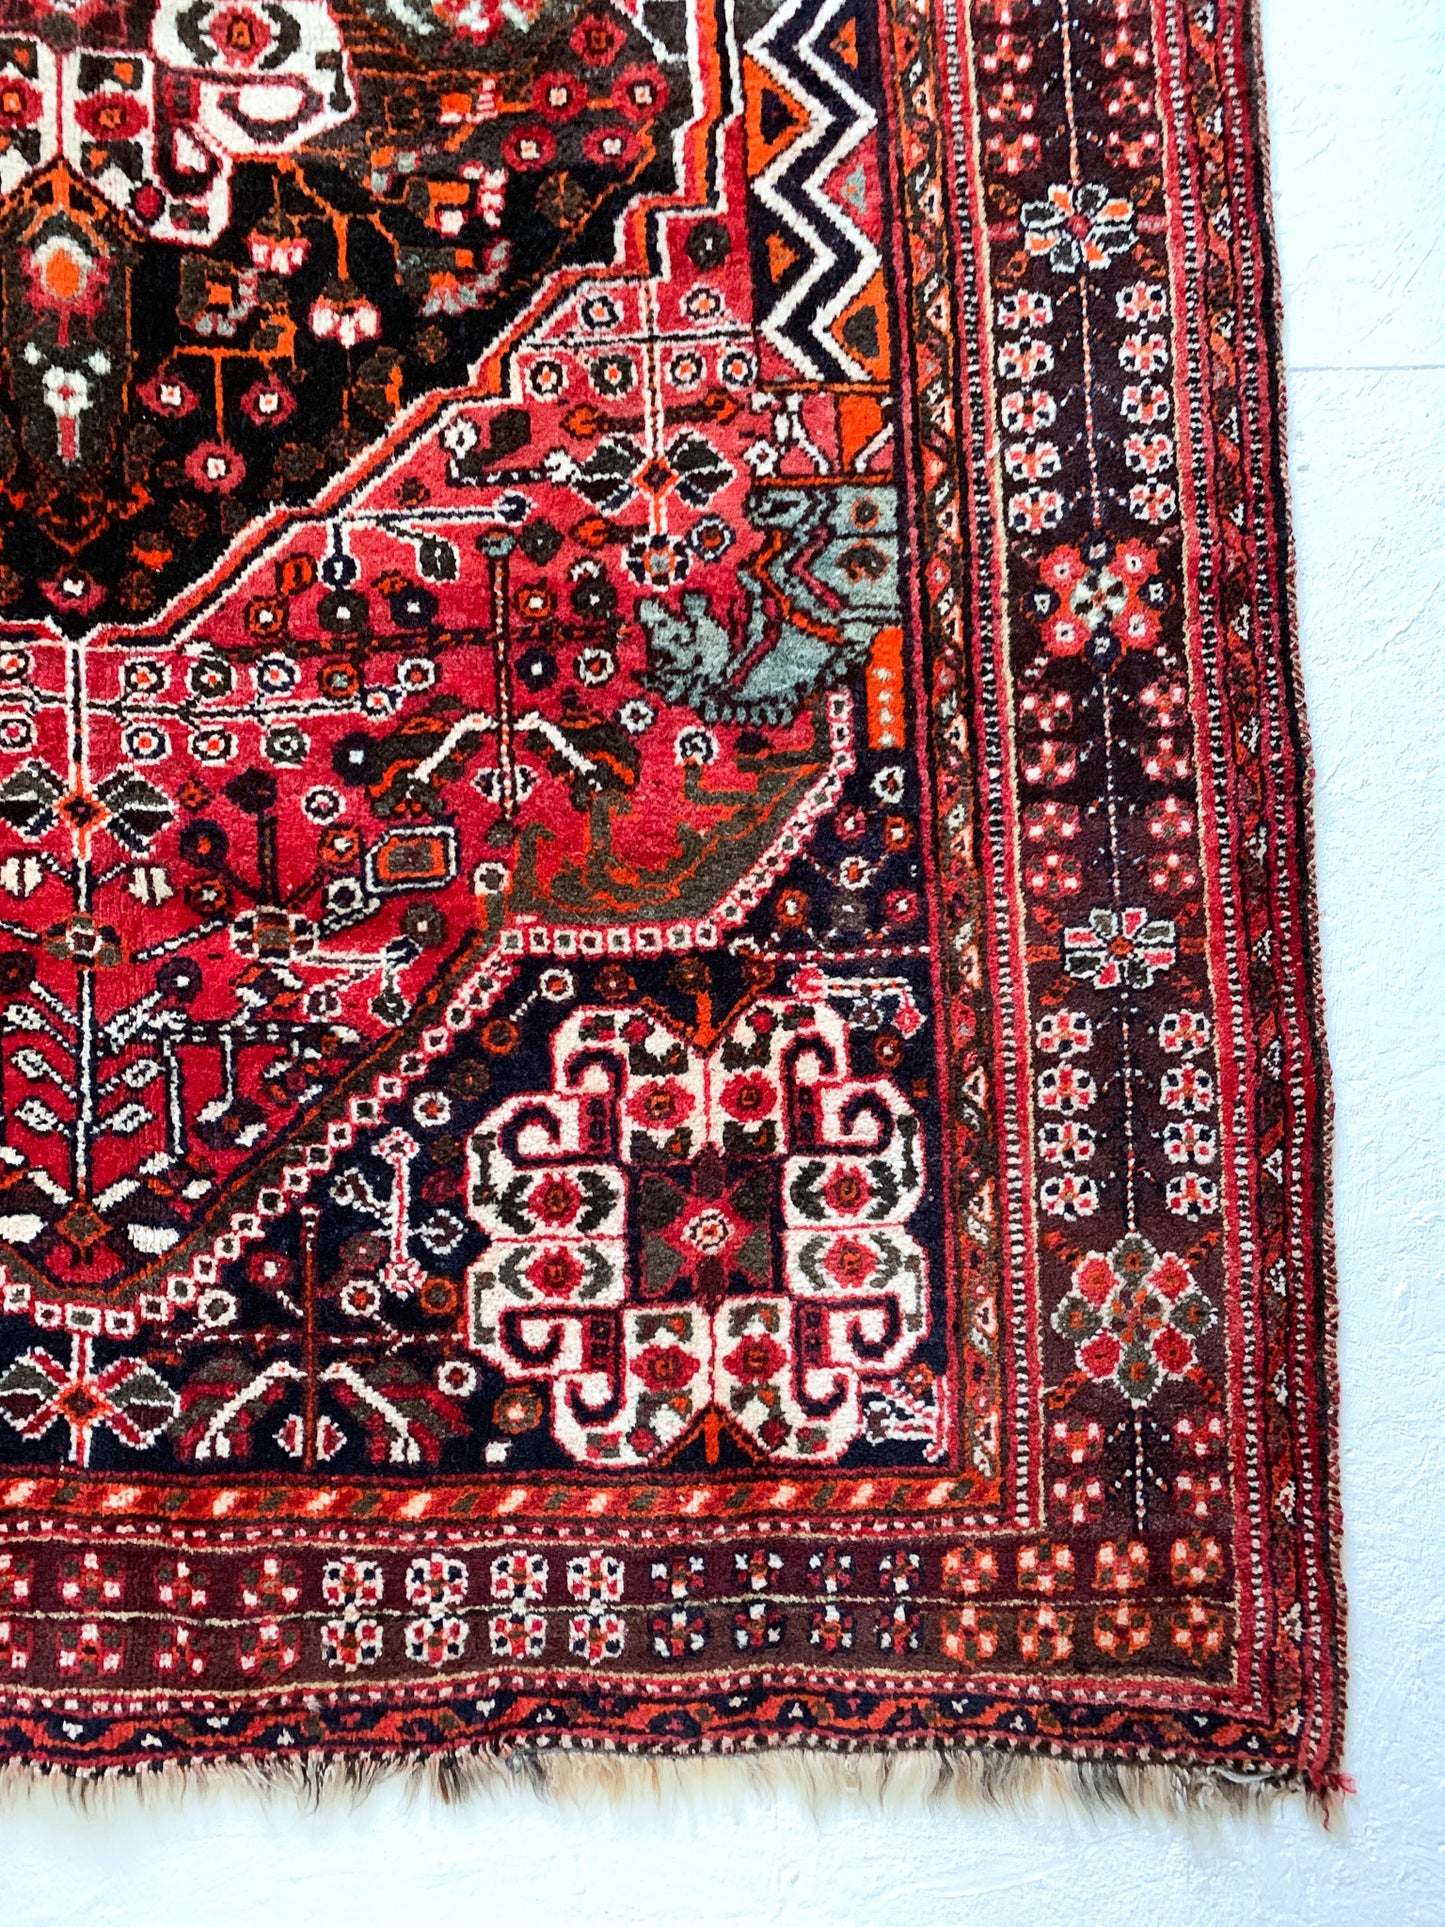 No. A1018 - 5.2' x 7.9' Vintage Persian Zanjan Area Rug